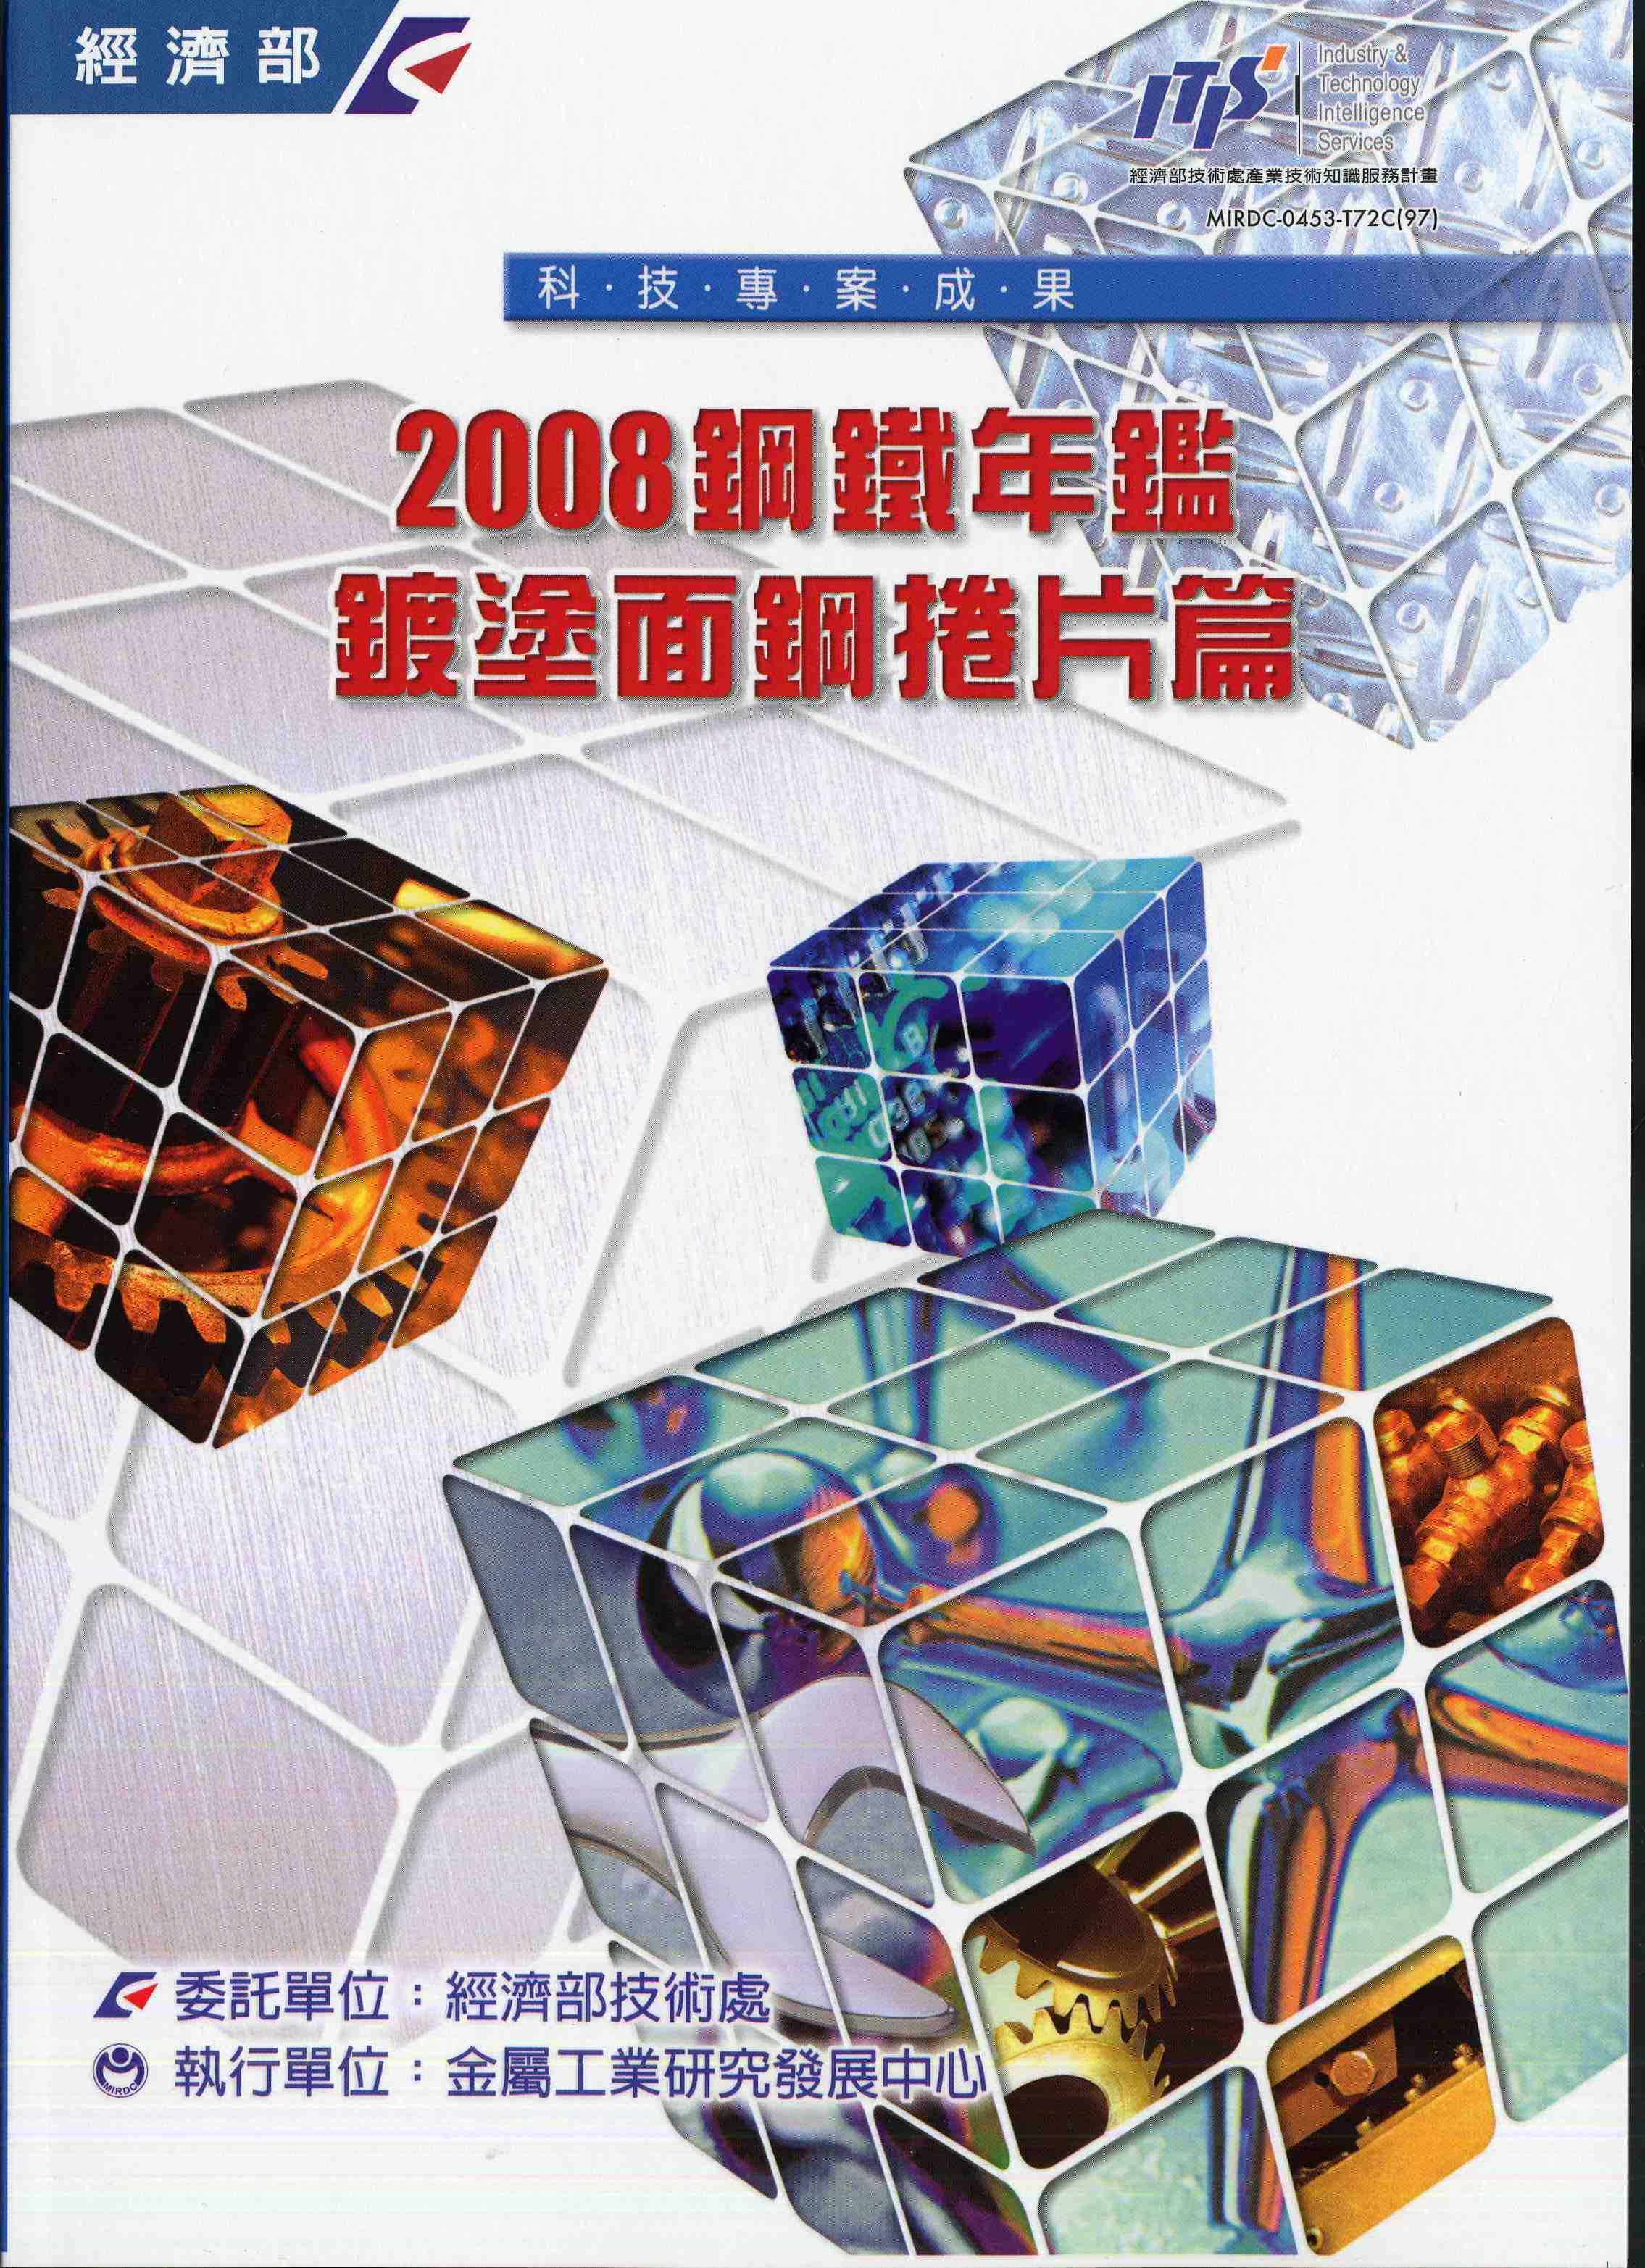 2008鋼鐵年鑑-鍍塗面鋼捲片篇